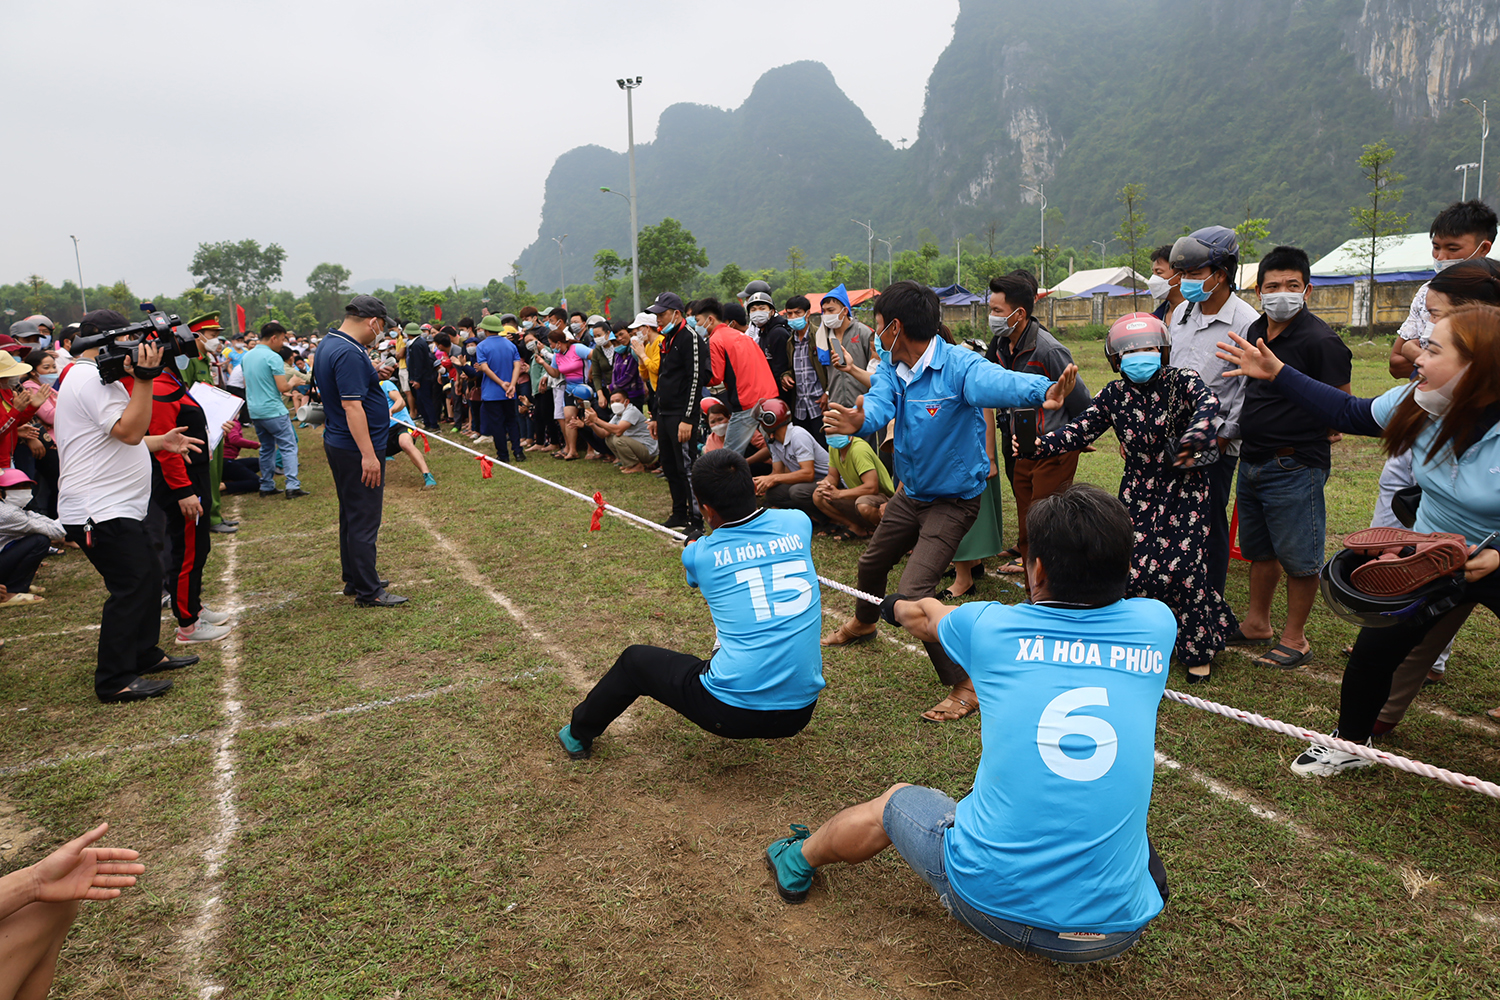  ĐVTN huyện Minh Hóa tích cực rèn luyện thể thao để nâng cao sức khỏe phục vụ xây dựng quê hương.